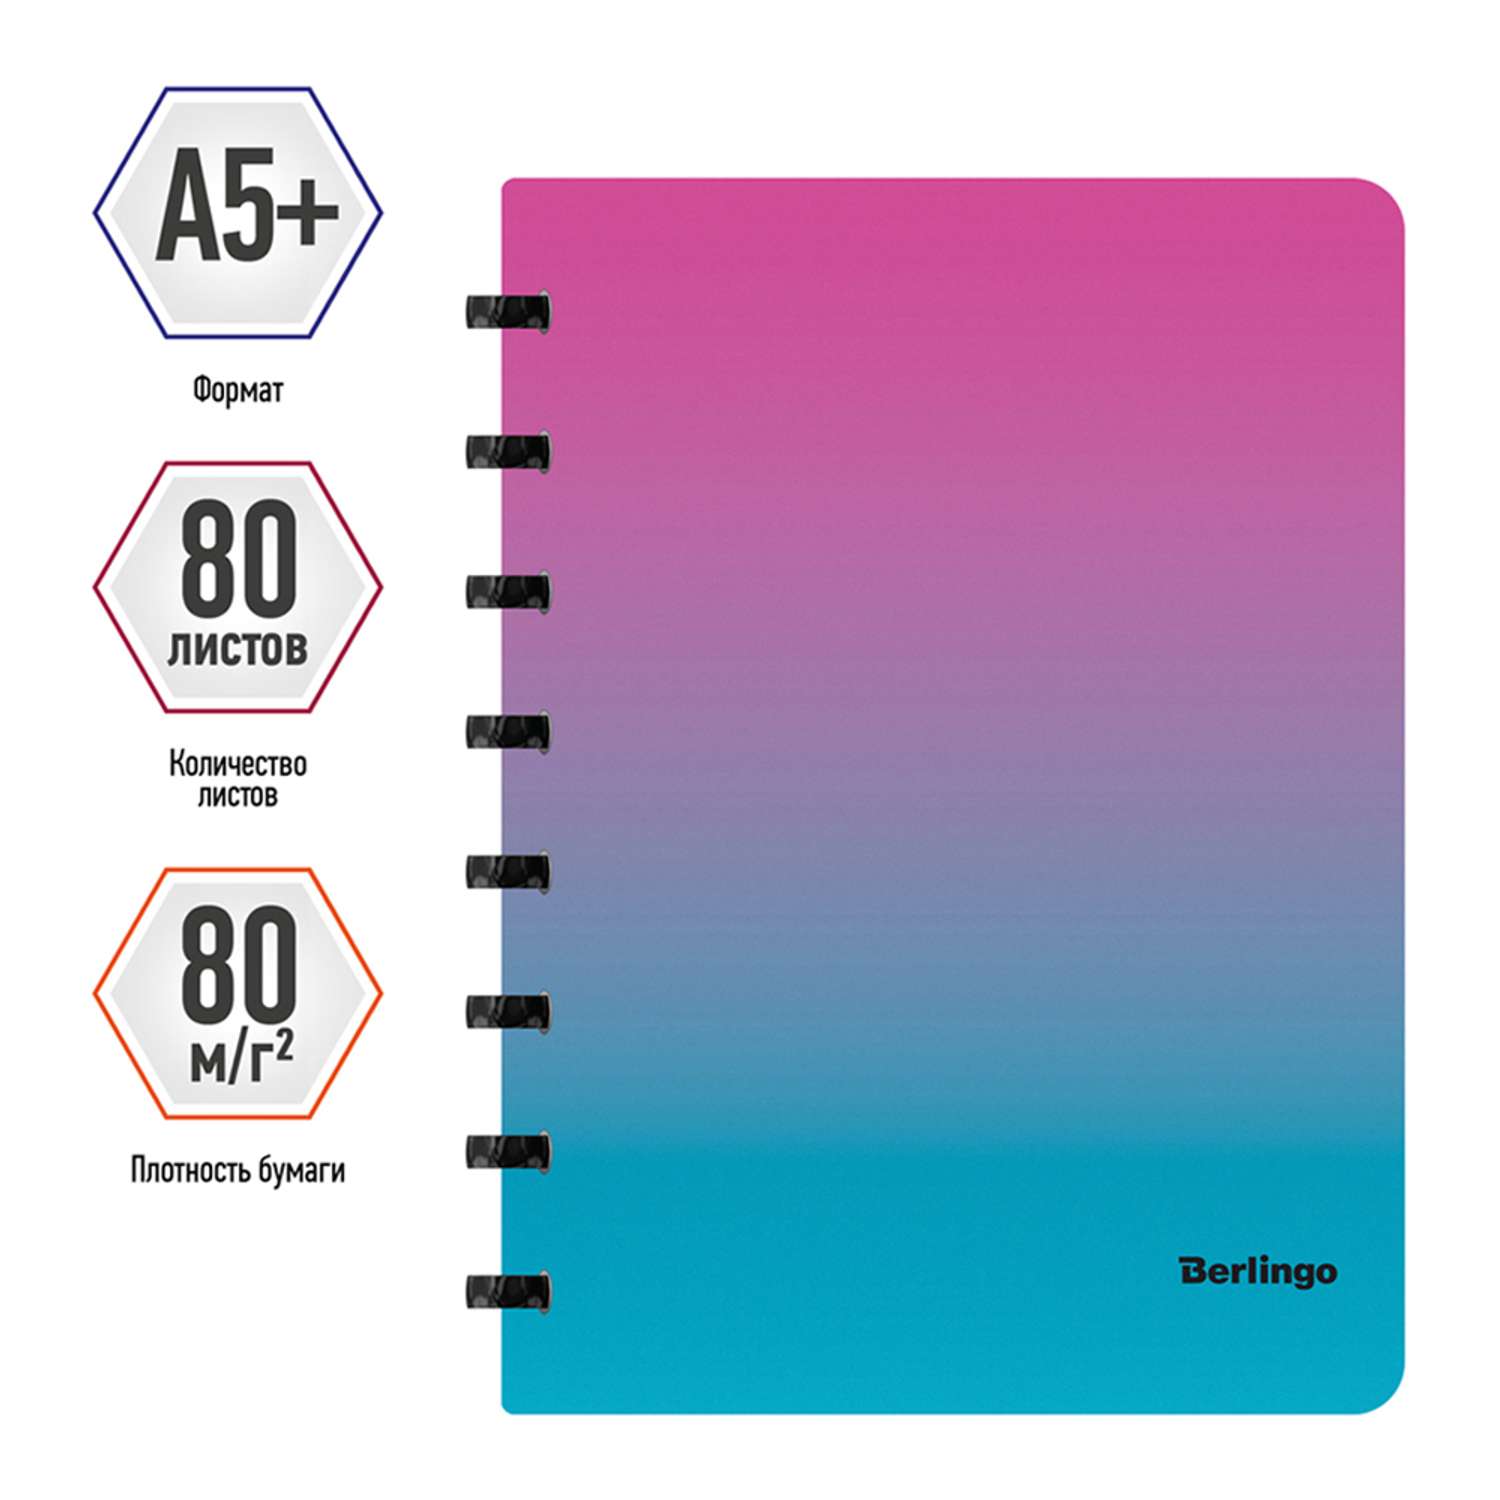 Бизнес-тетрадь Berlingo Radiance А5+ 80 листов клетка на кольцах 80г/м2 пластиковая обложка 700мкм розовый/голубой - фото 2